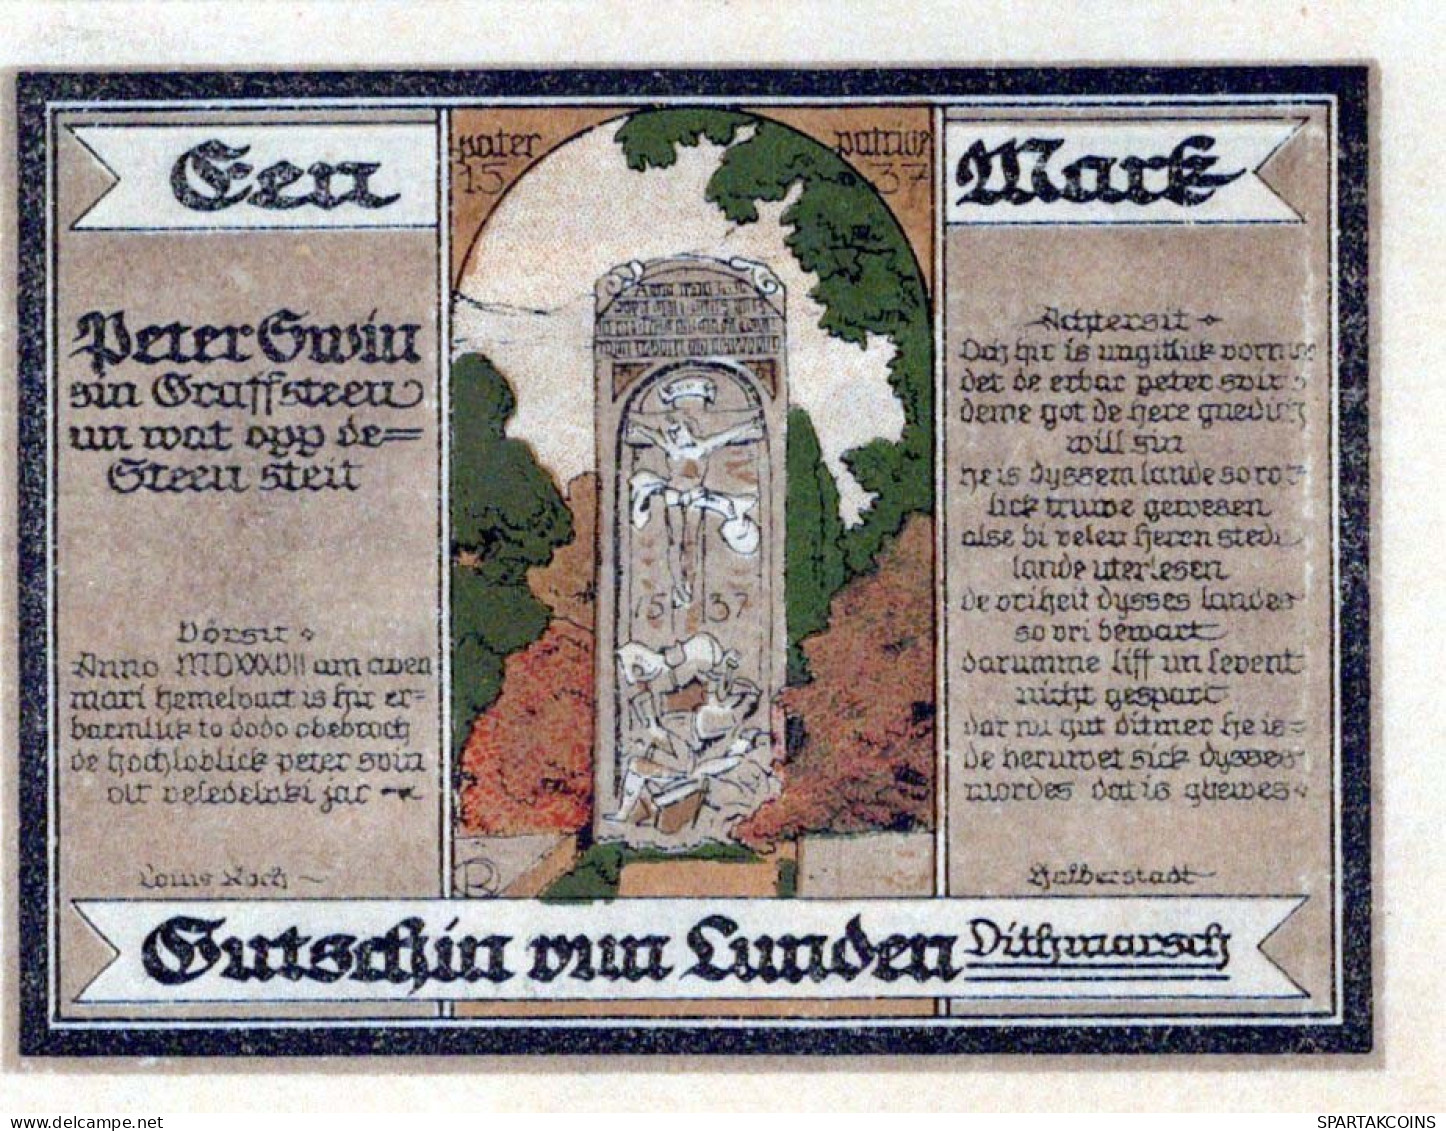 100 PFENNIG 1921 Stadt LUNDEN Schleswig-Holstein UNC DEUTSCHLAND Notgeld #PC659 - [11] Emisiones Locales